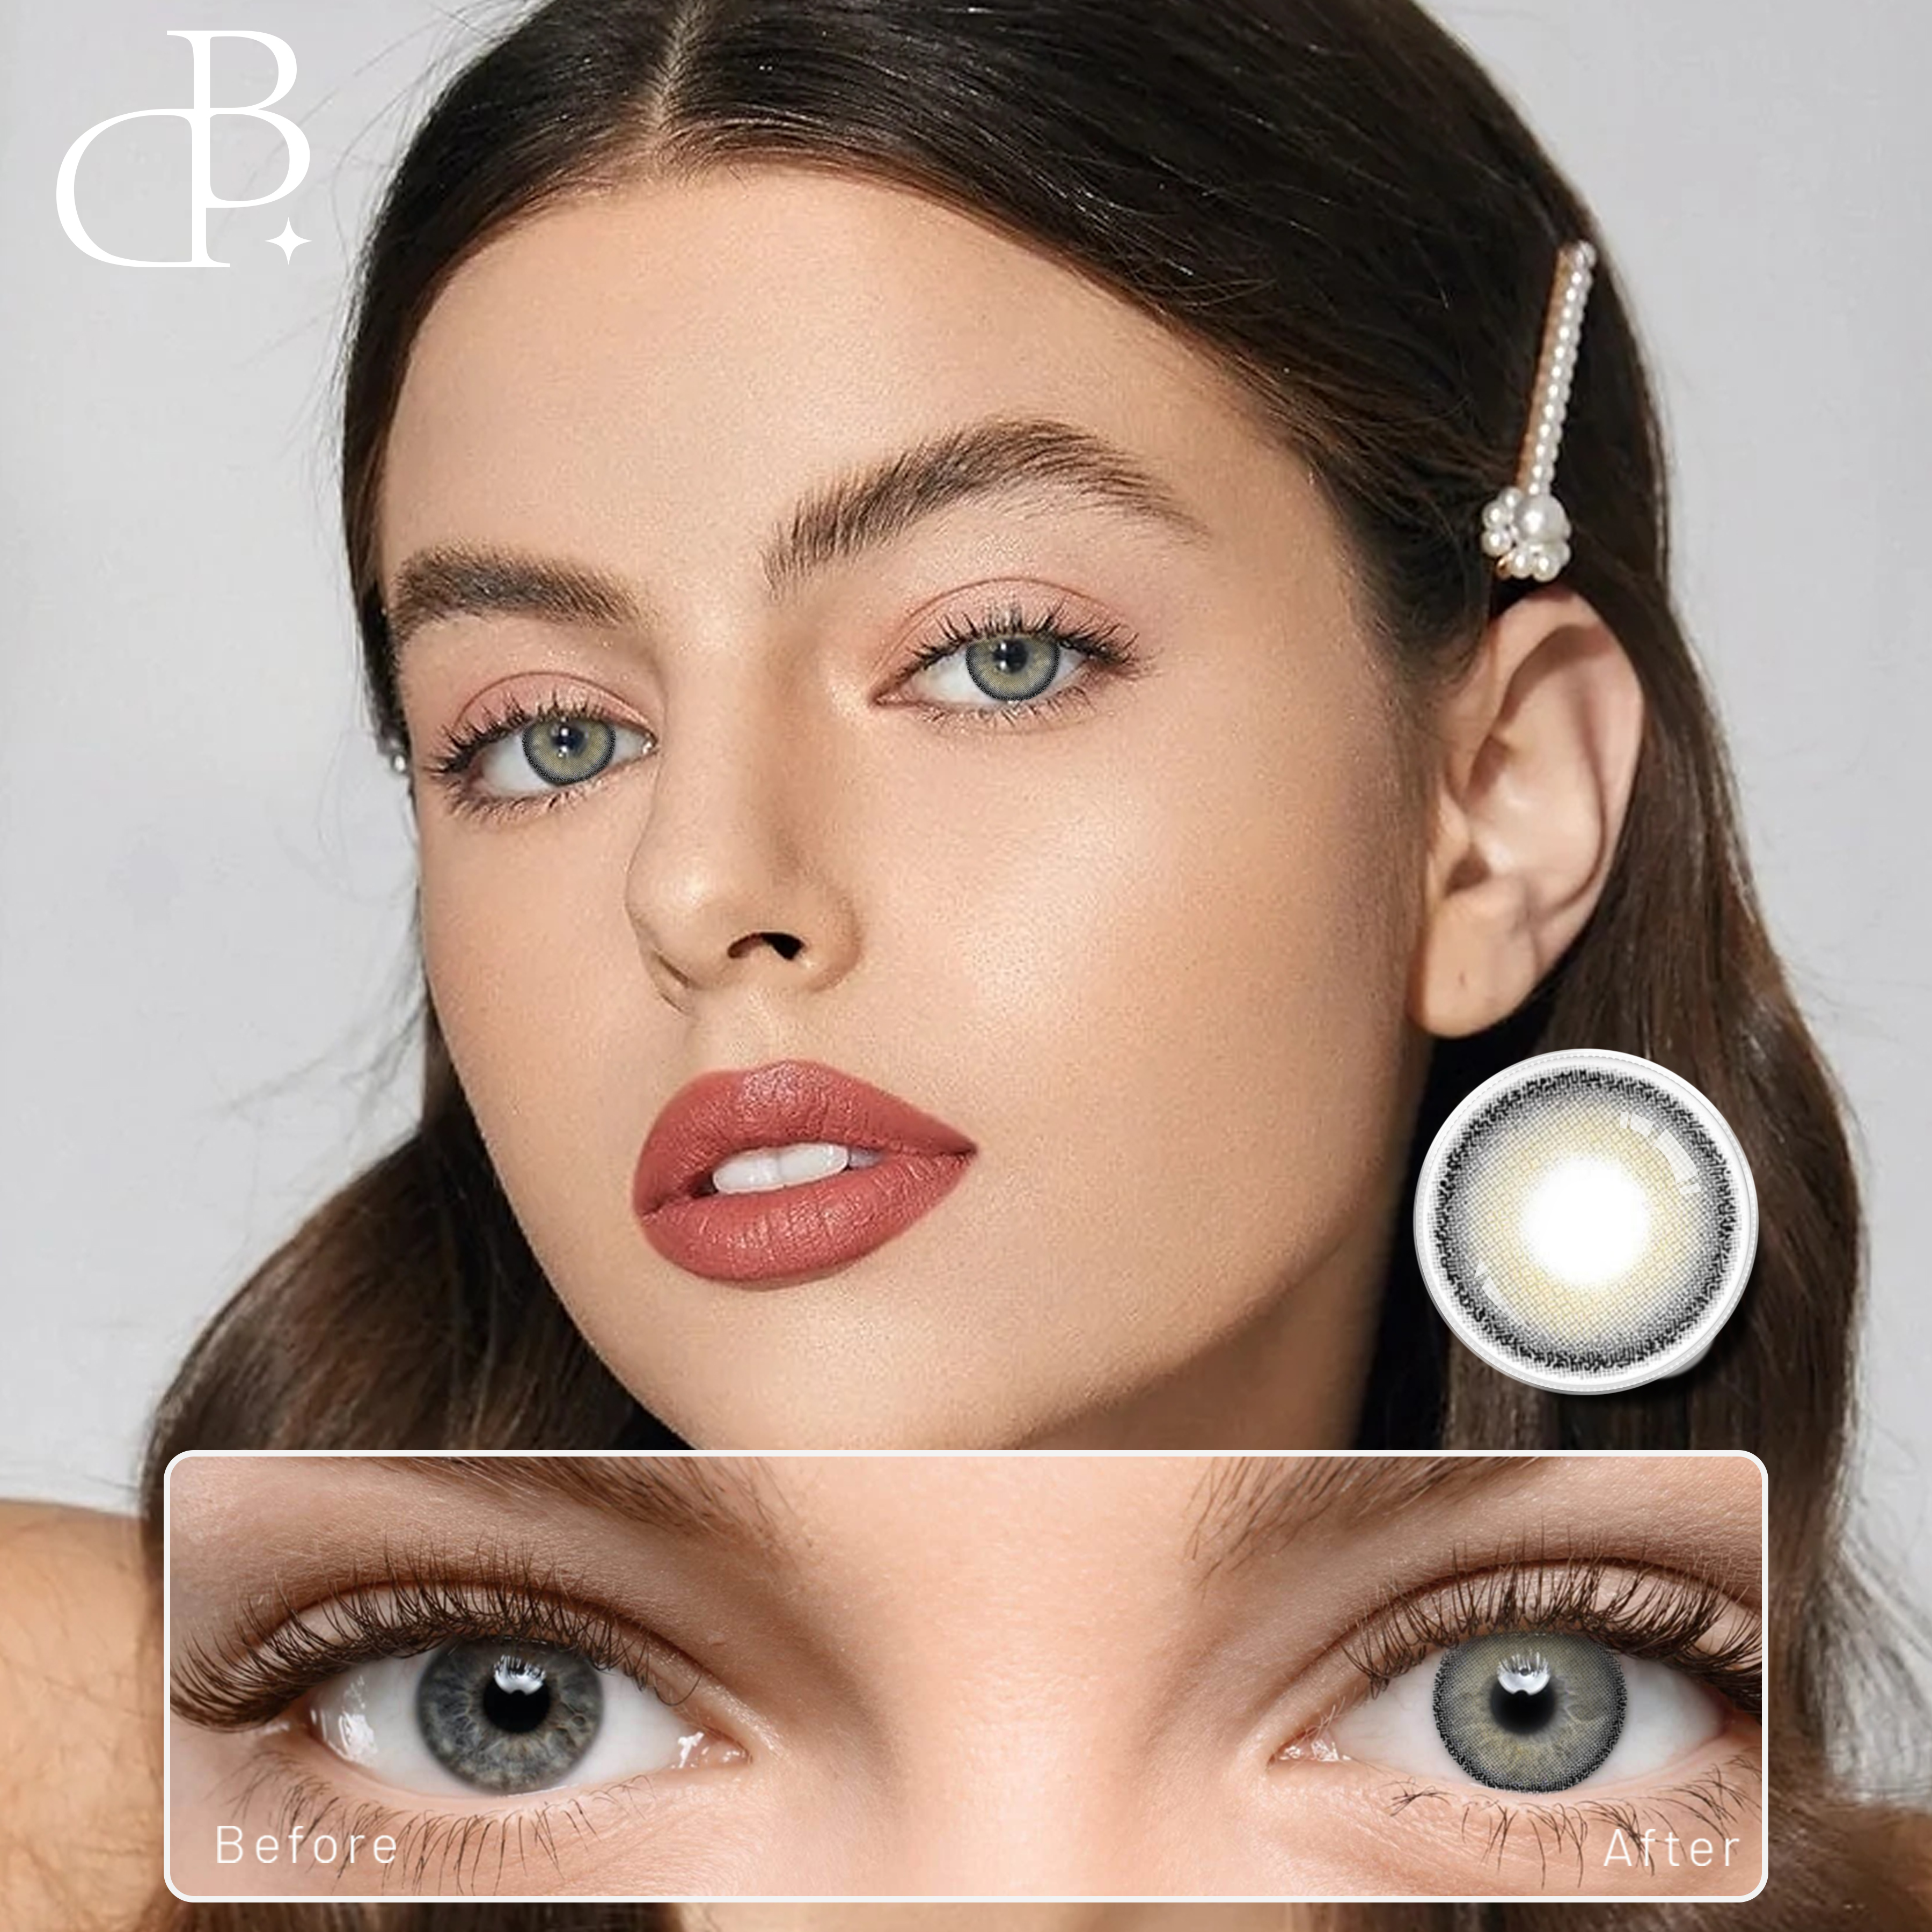 Veleprodaja jednokratnih kontaktnih leća u boji Godišnje kontaktne leće u boji Prilagođeni logotip i pakovanje